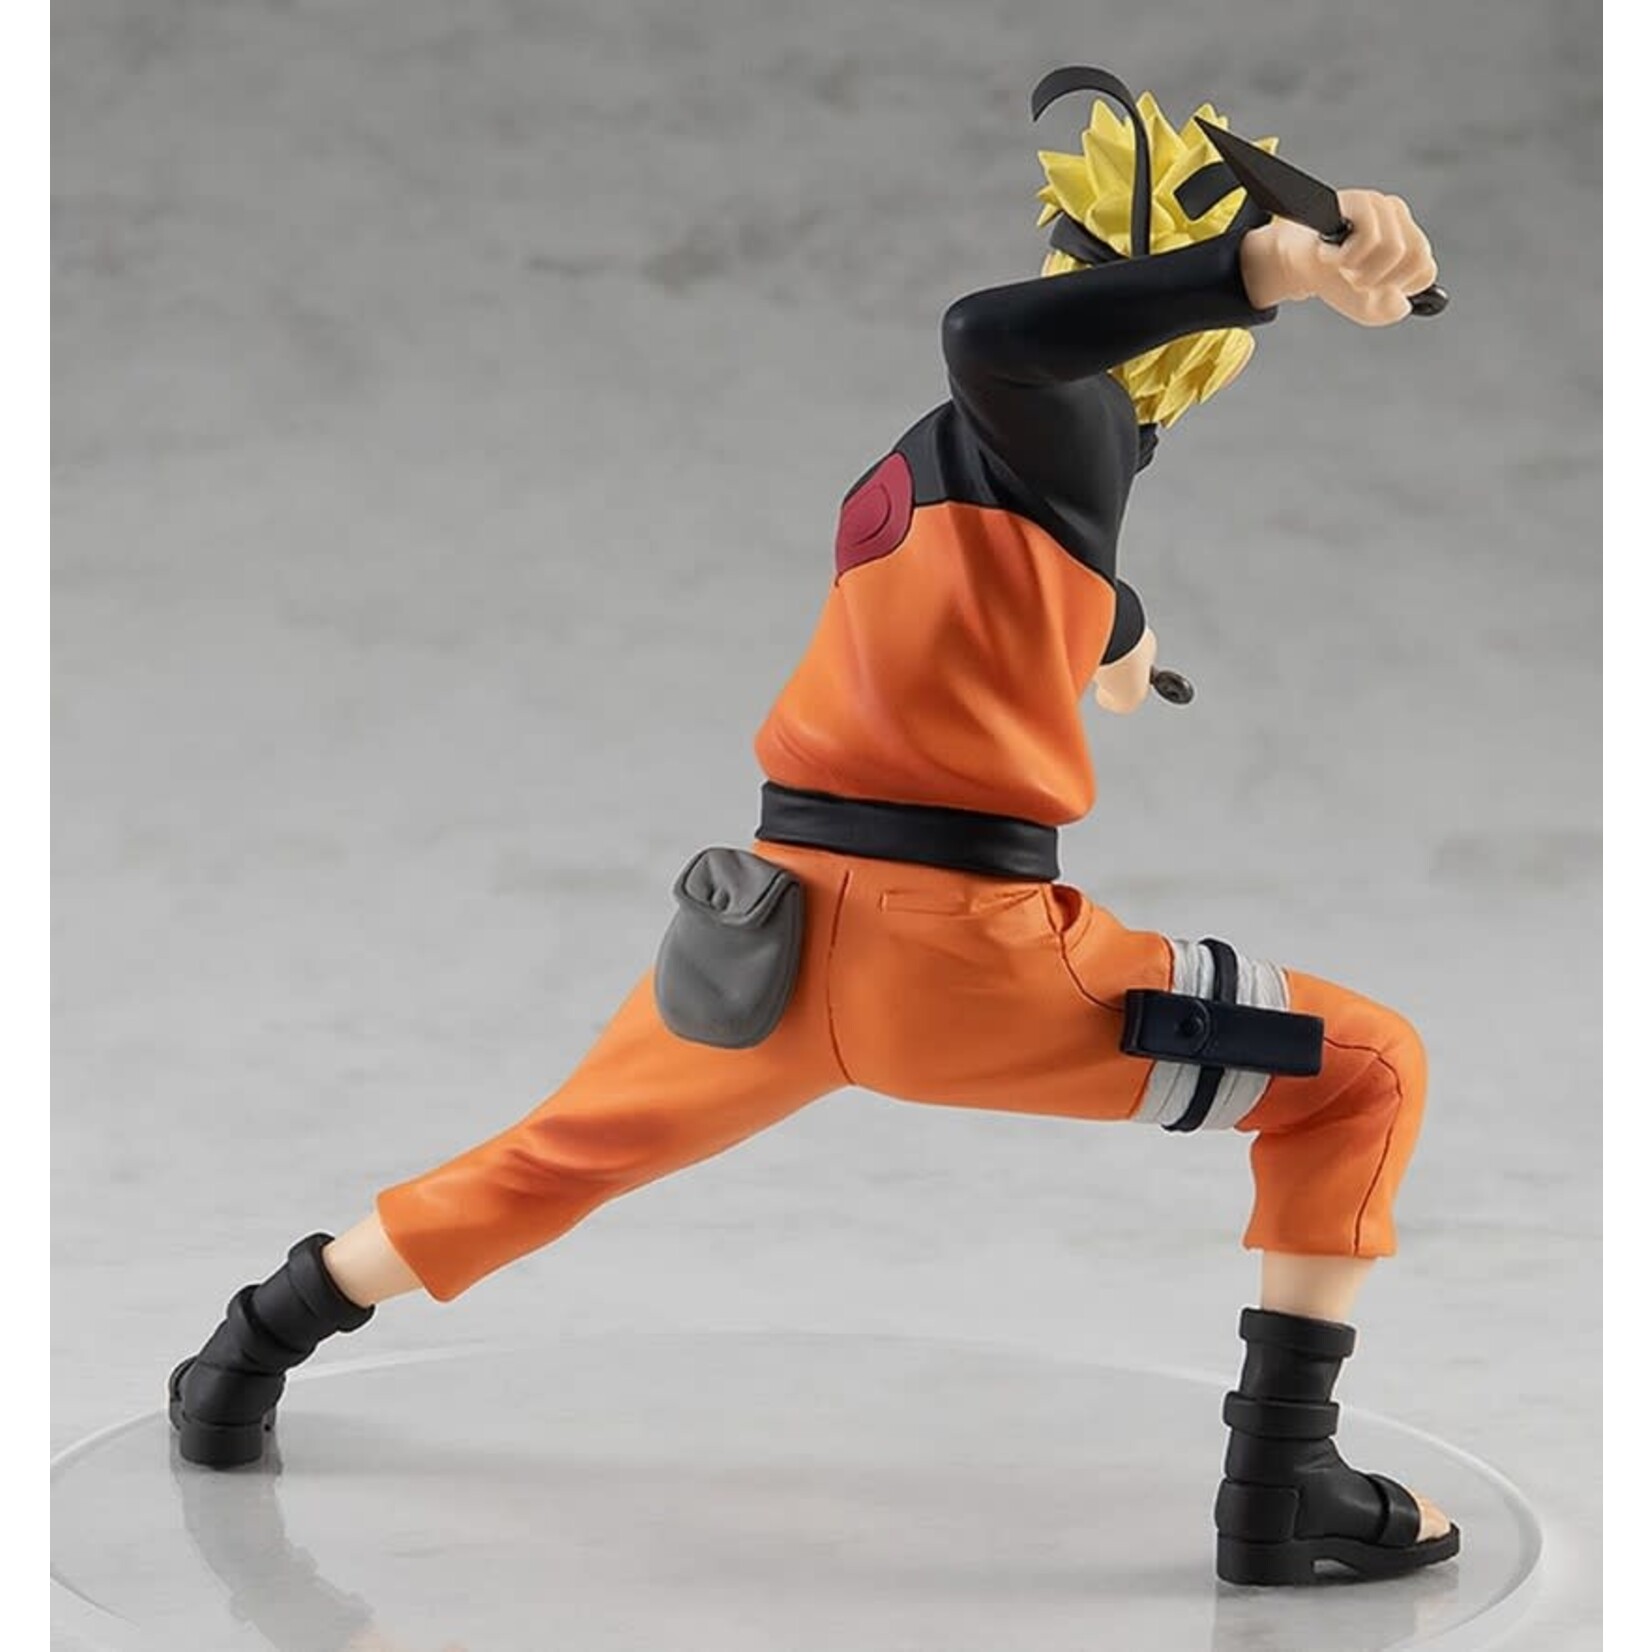 Naruto Naruto Shippuden - Naruto Uzumaki Pop Up Parade Figure